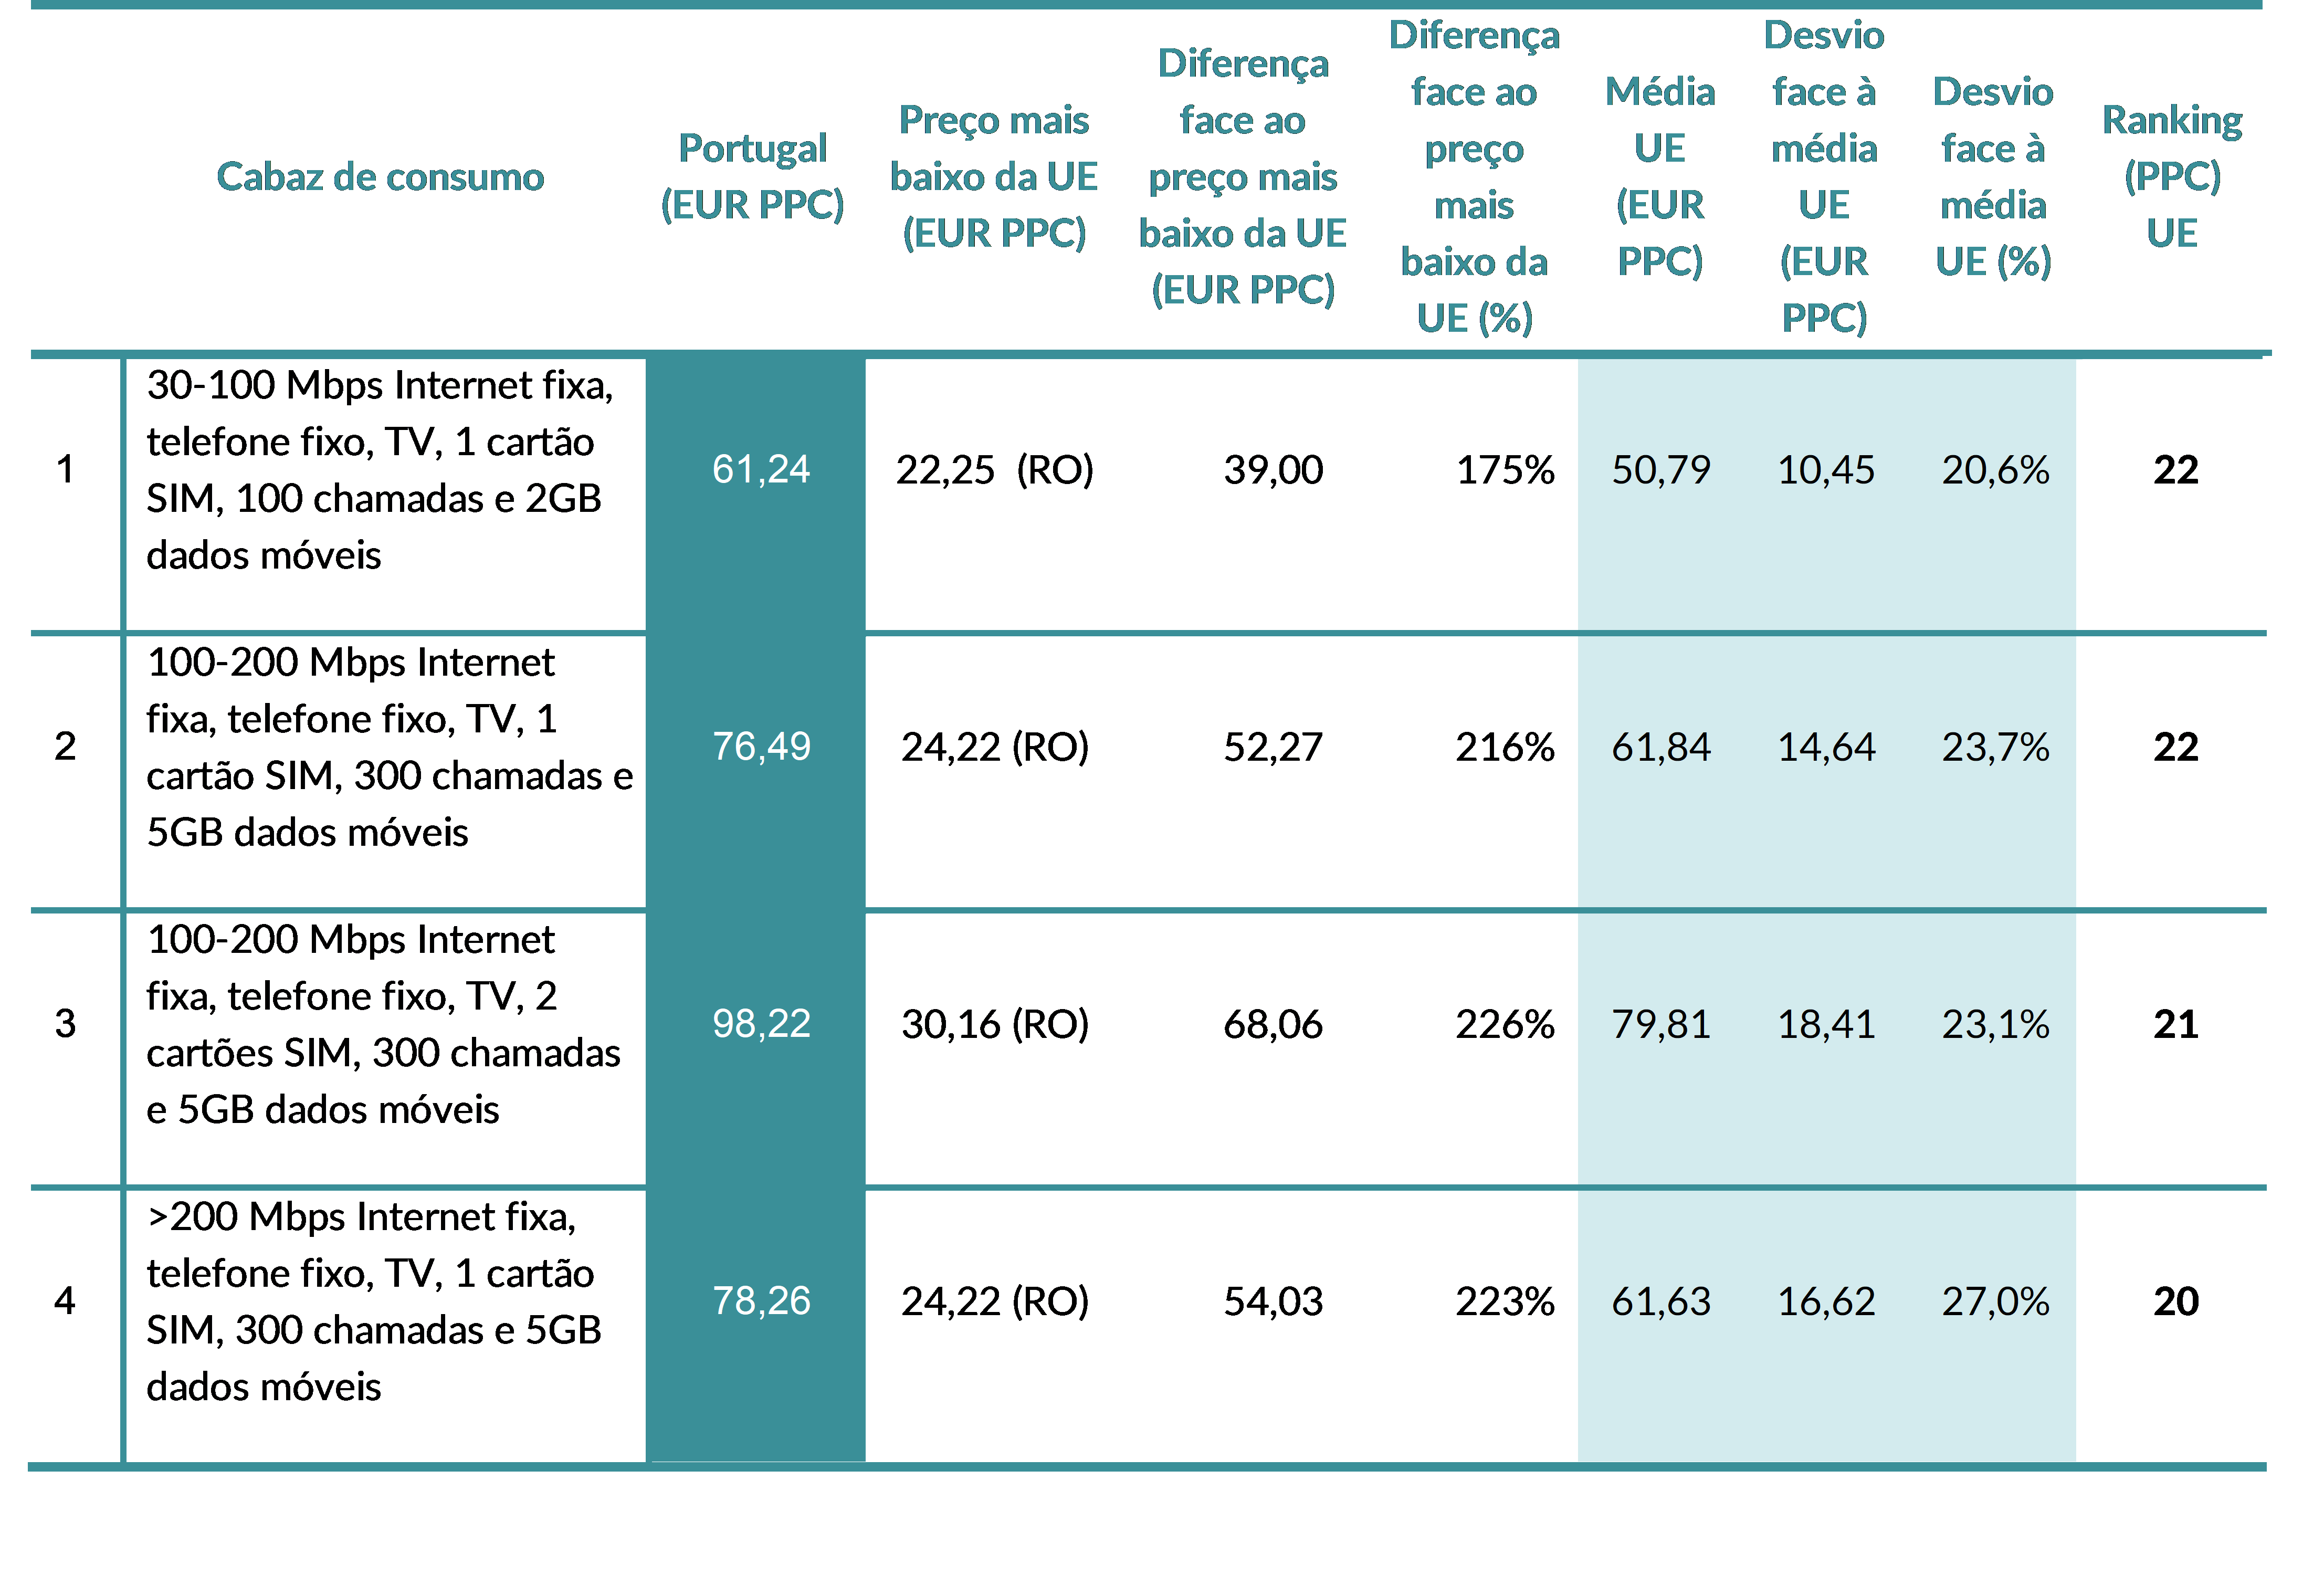 Tabela 4 - Comparação dos preços mensais das ofertas convergentes 4P